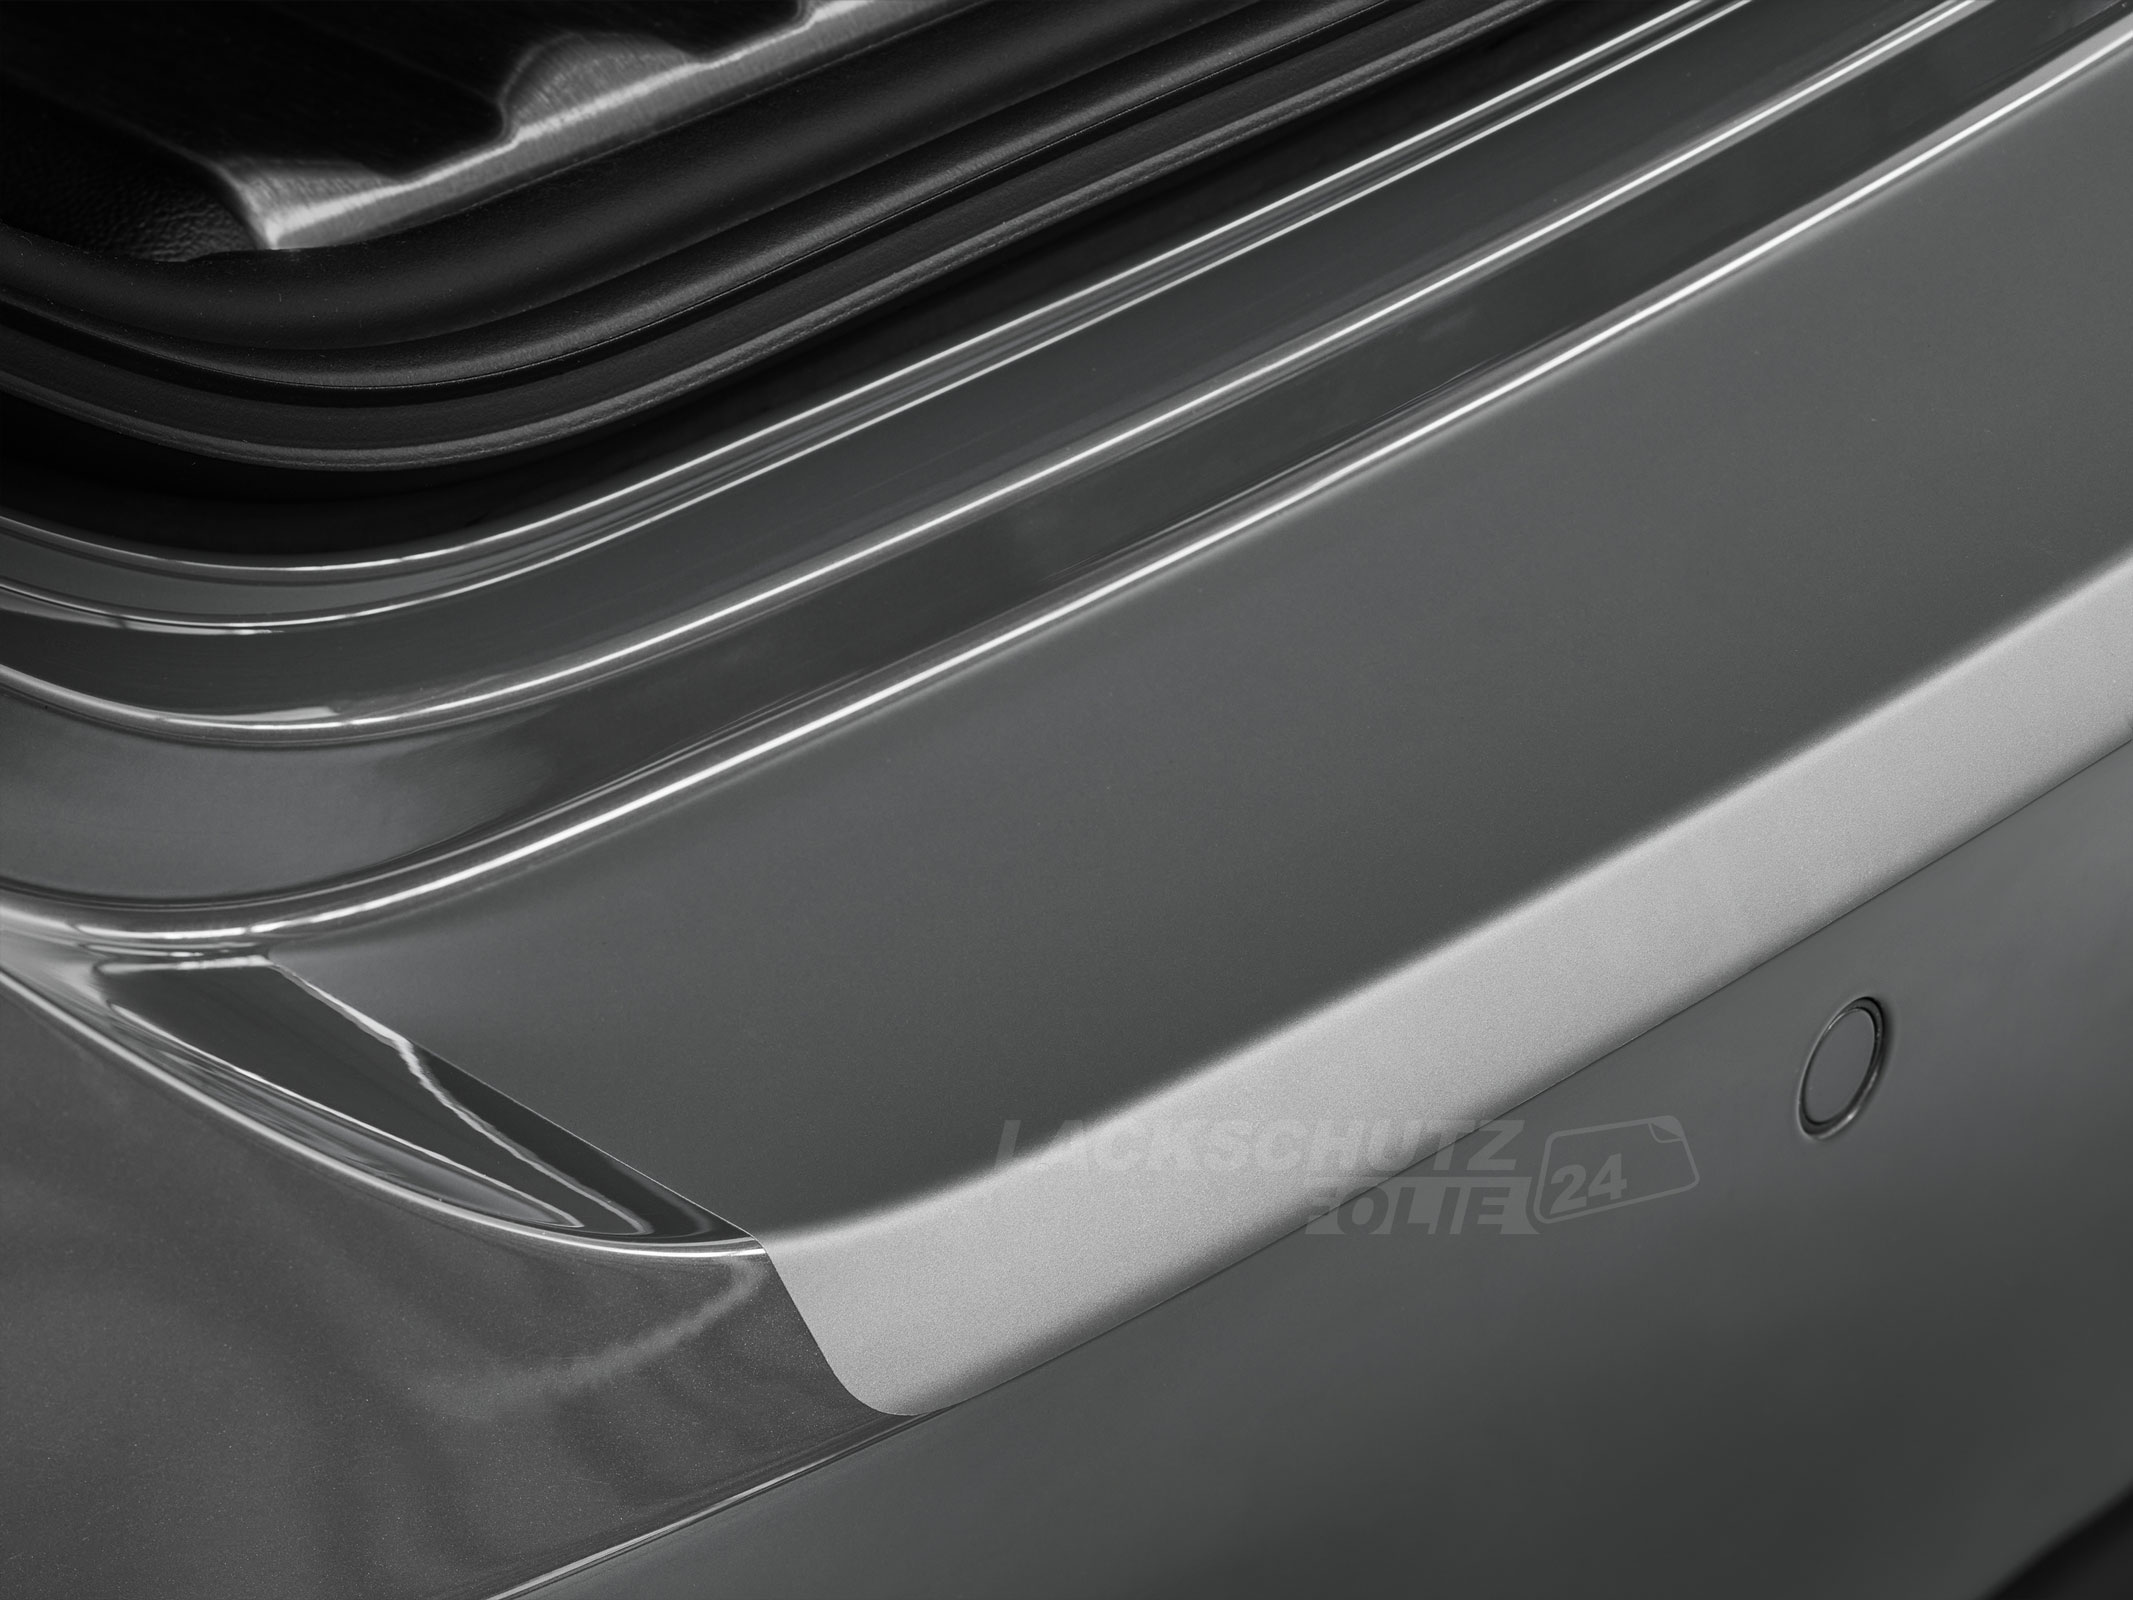 Ladekantenschutzfolie - Transparent Glatt MATT 110 µm stark  für Audi A3 Typ 8V, BJ 08/2012-2020